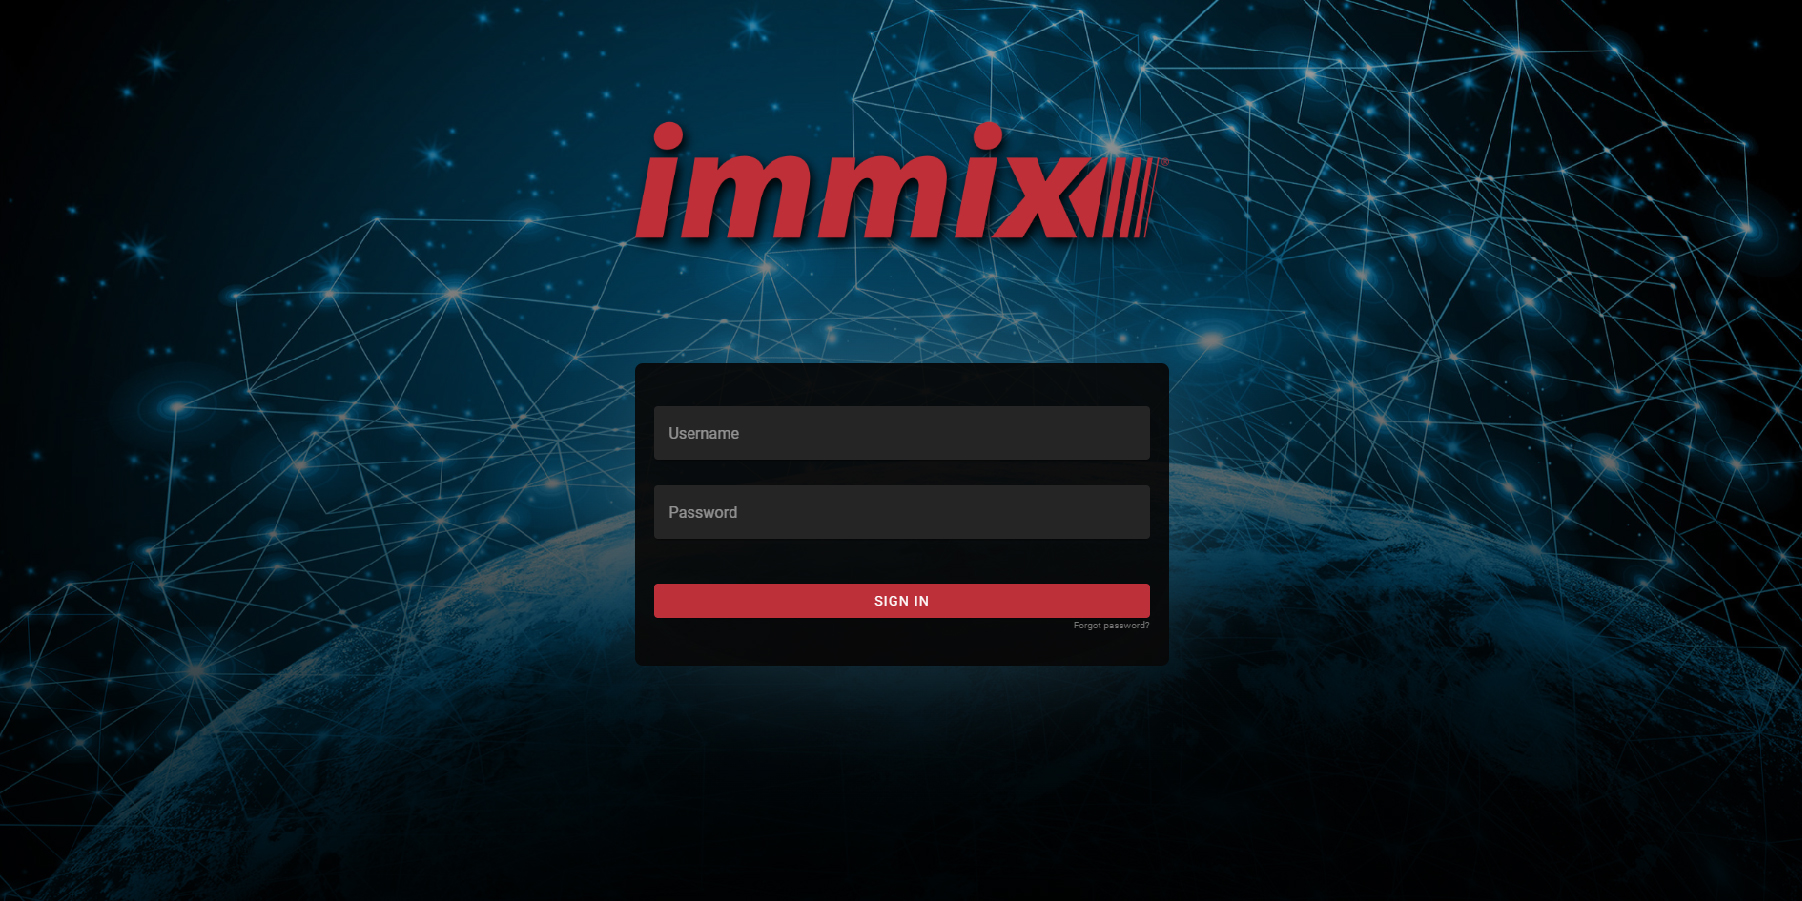 immx screen.jpg